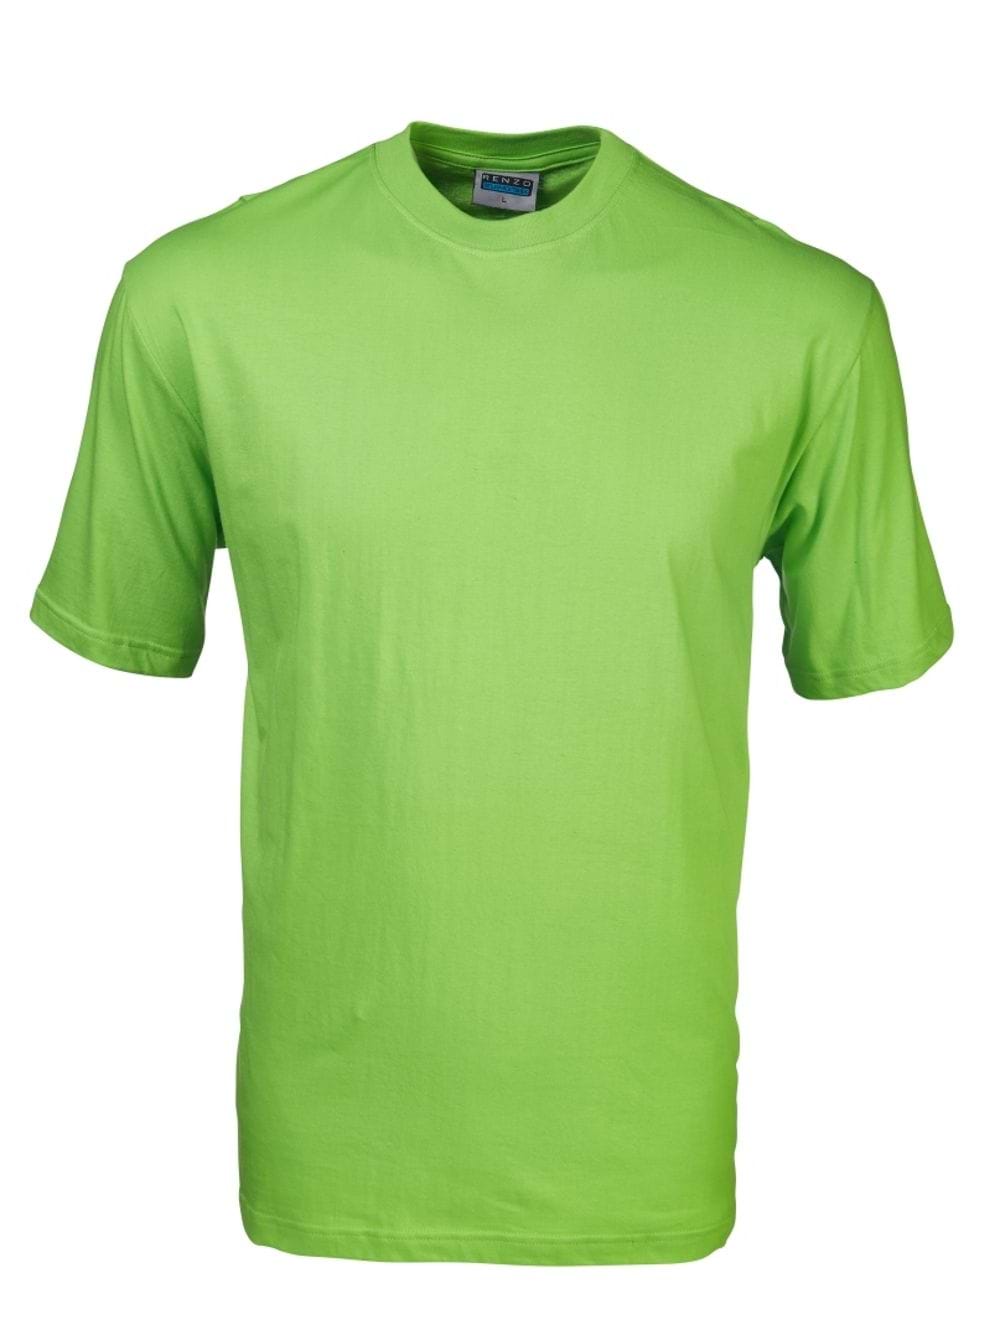 165G Crew Neck T-Shirt - Lime Green / 4XL